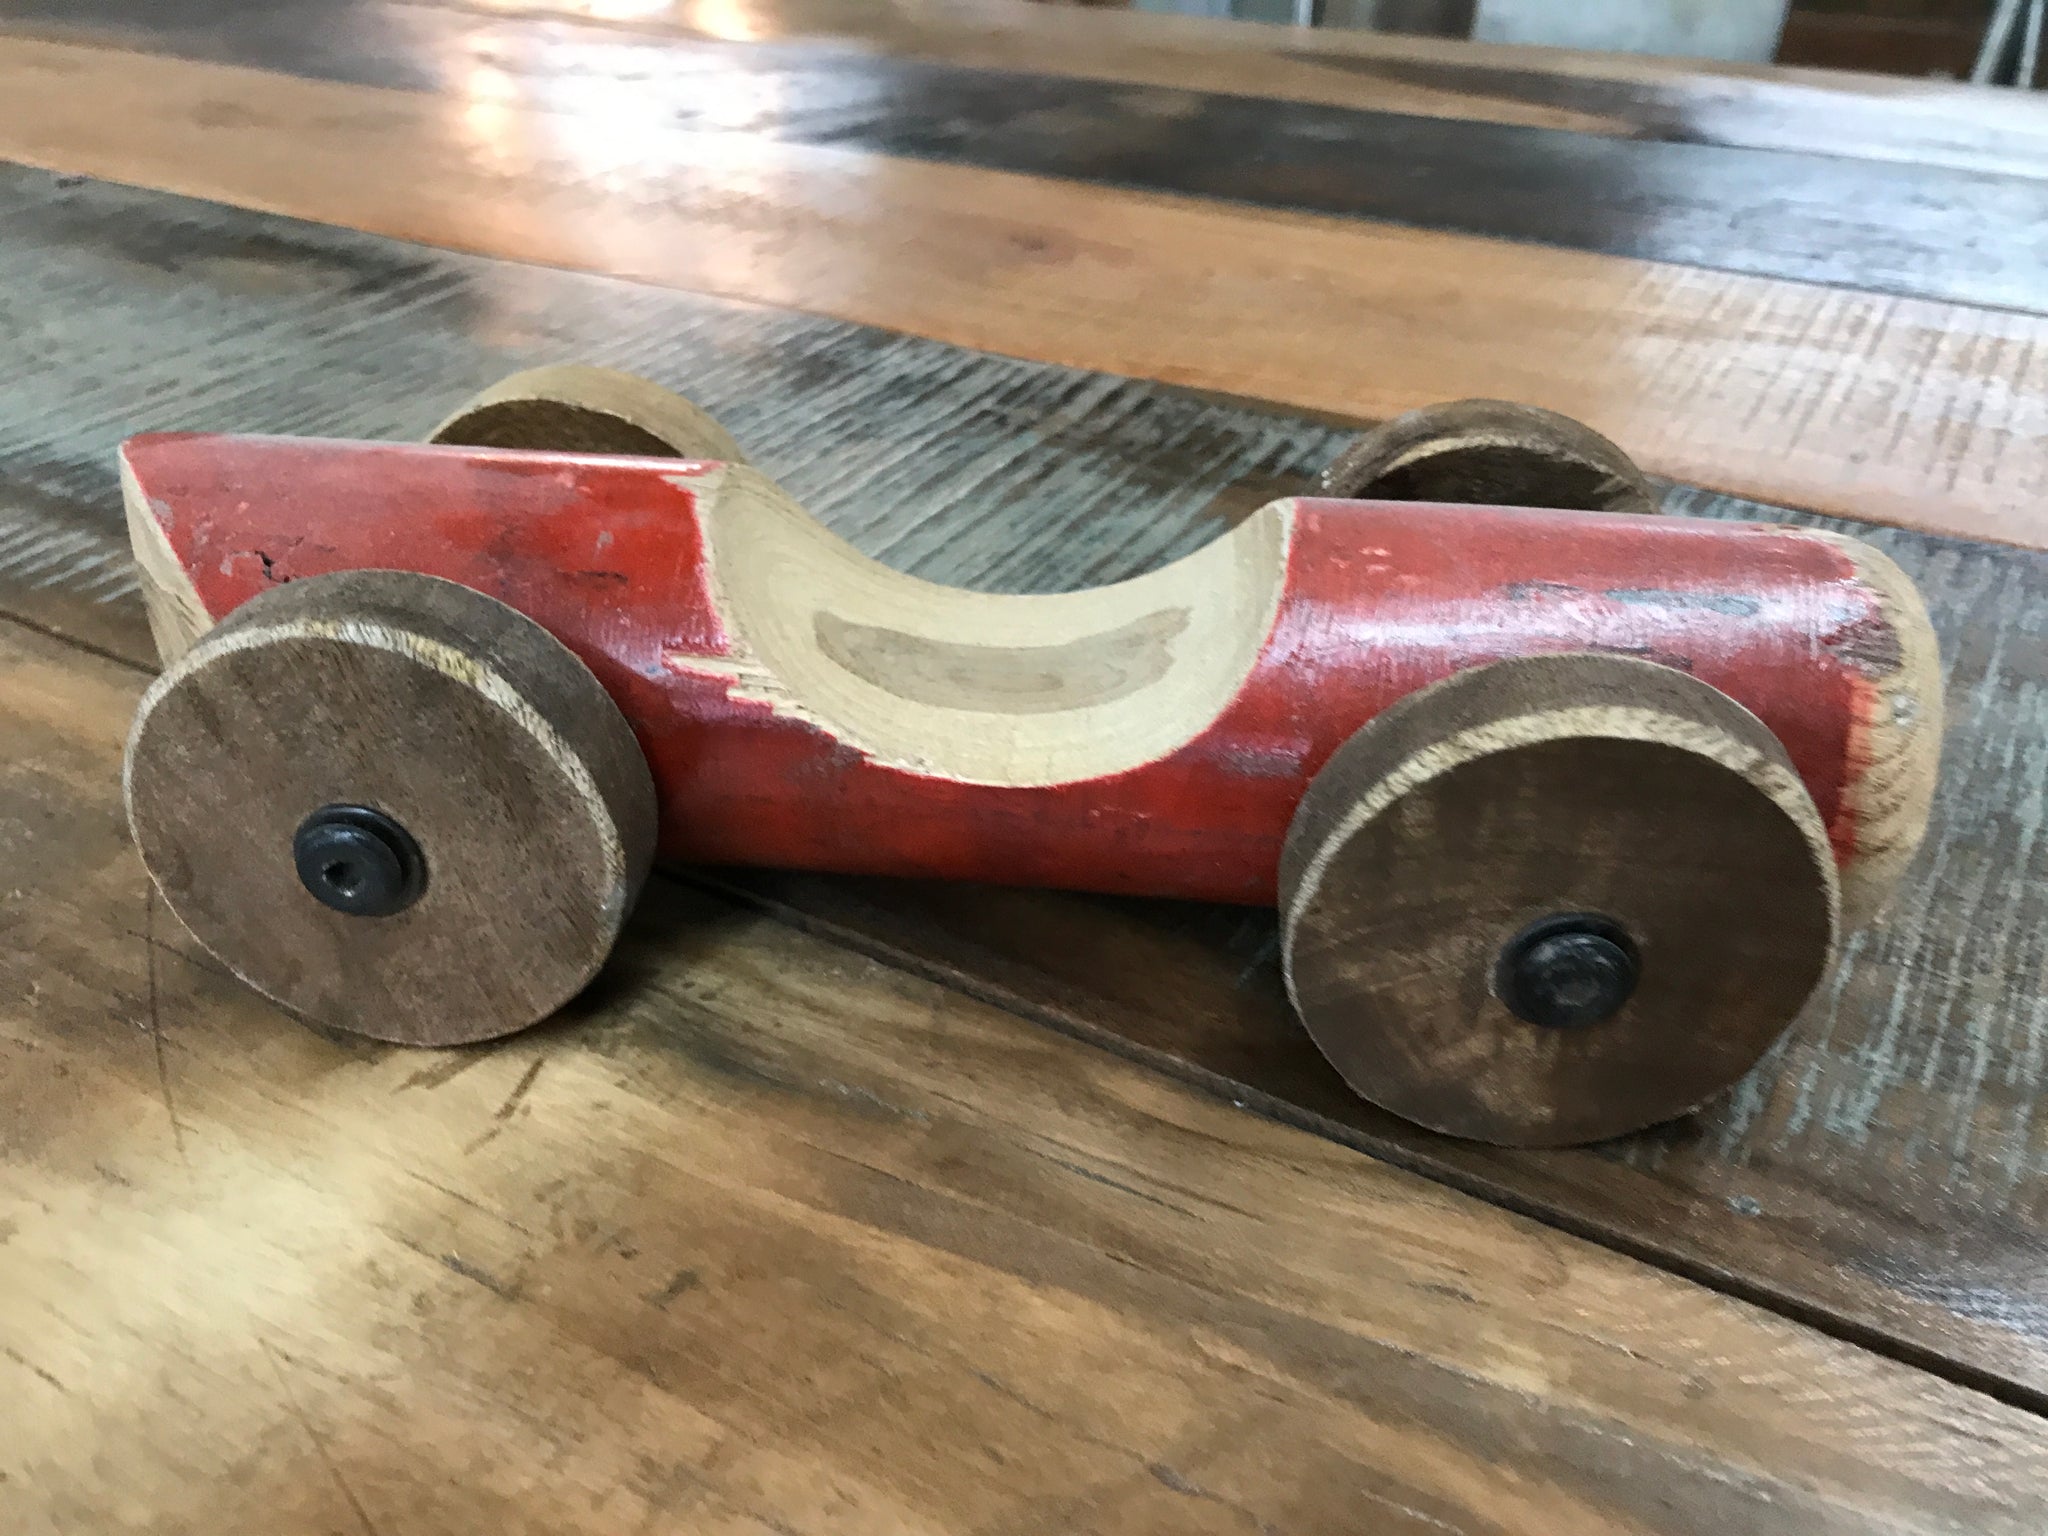 Voiture-jouet vintage en bois